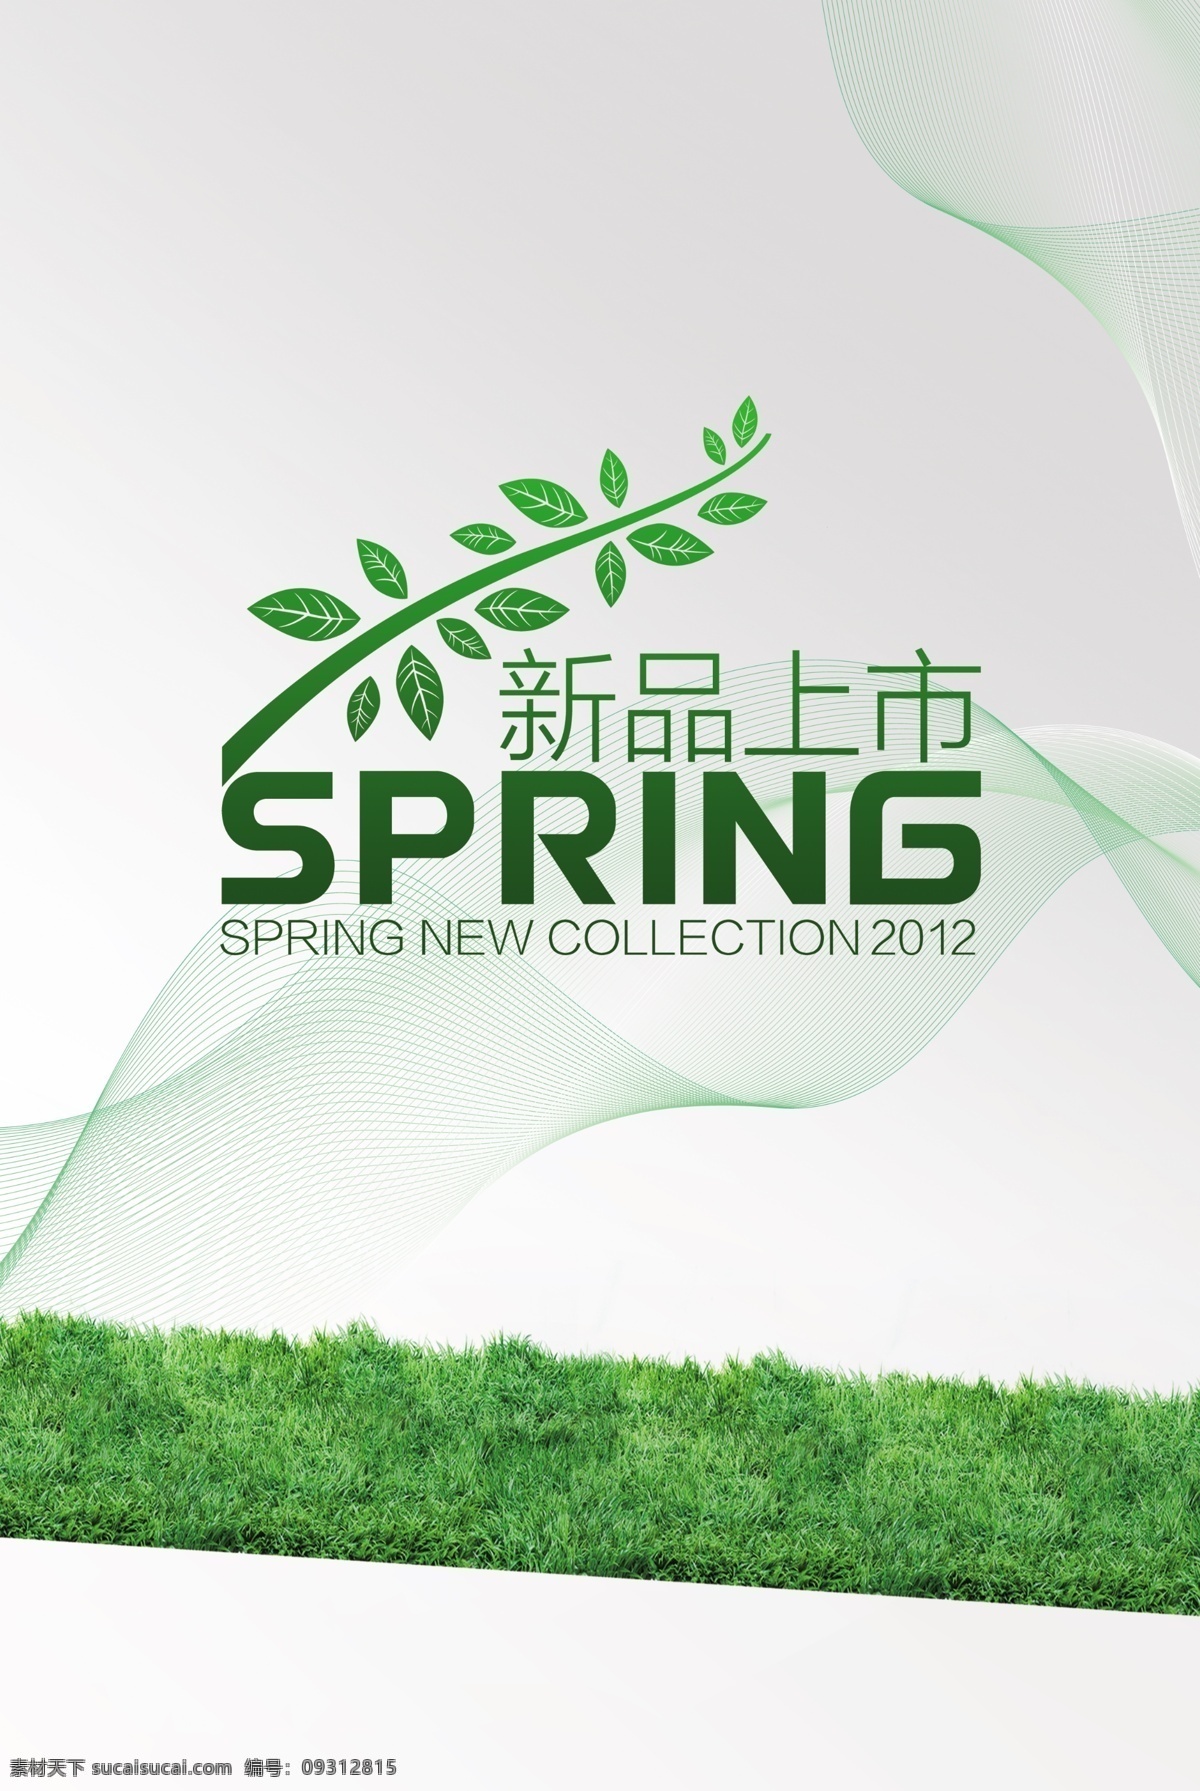 春季免费下载 春季 促销 广告设计模板 绿色 销售 新品上市 源文件 促销海报